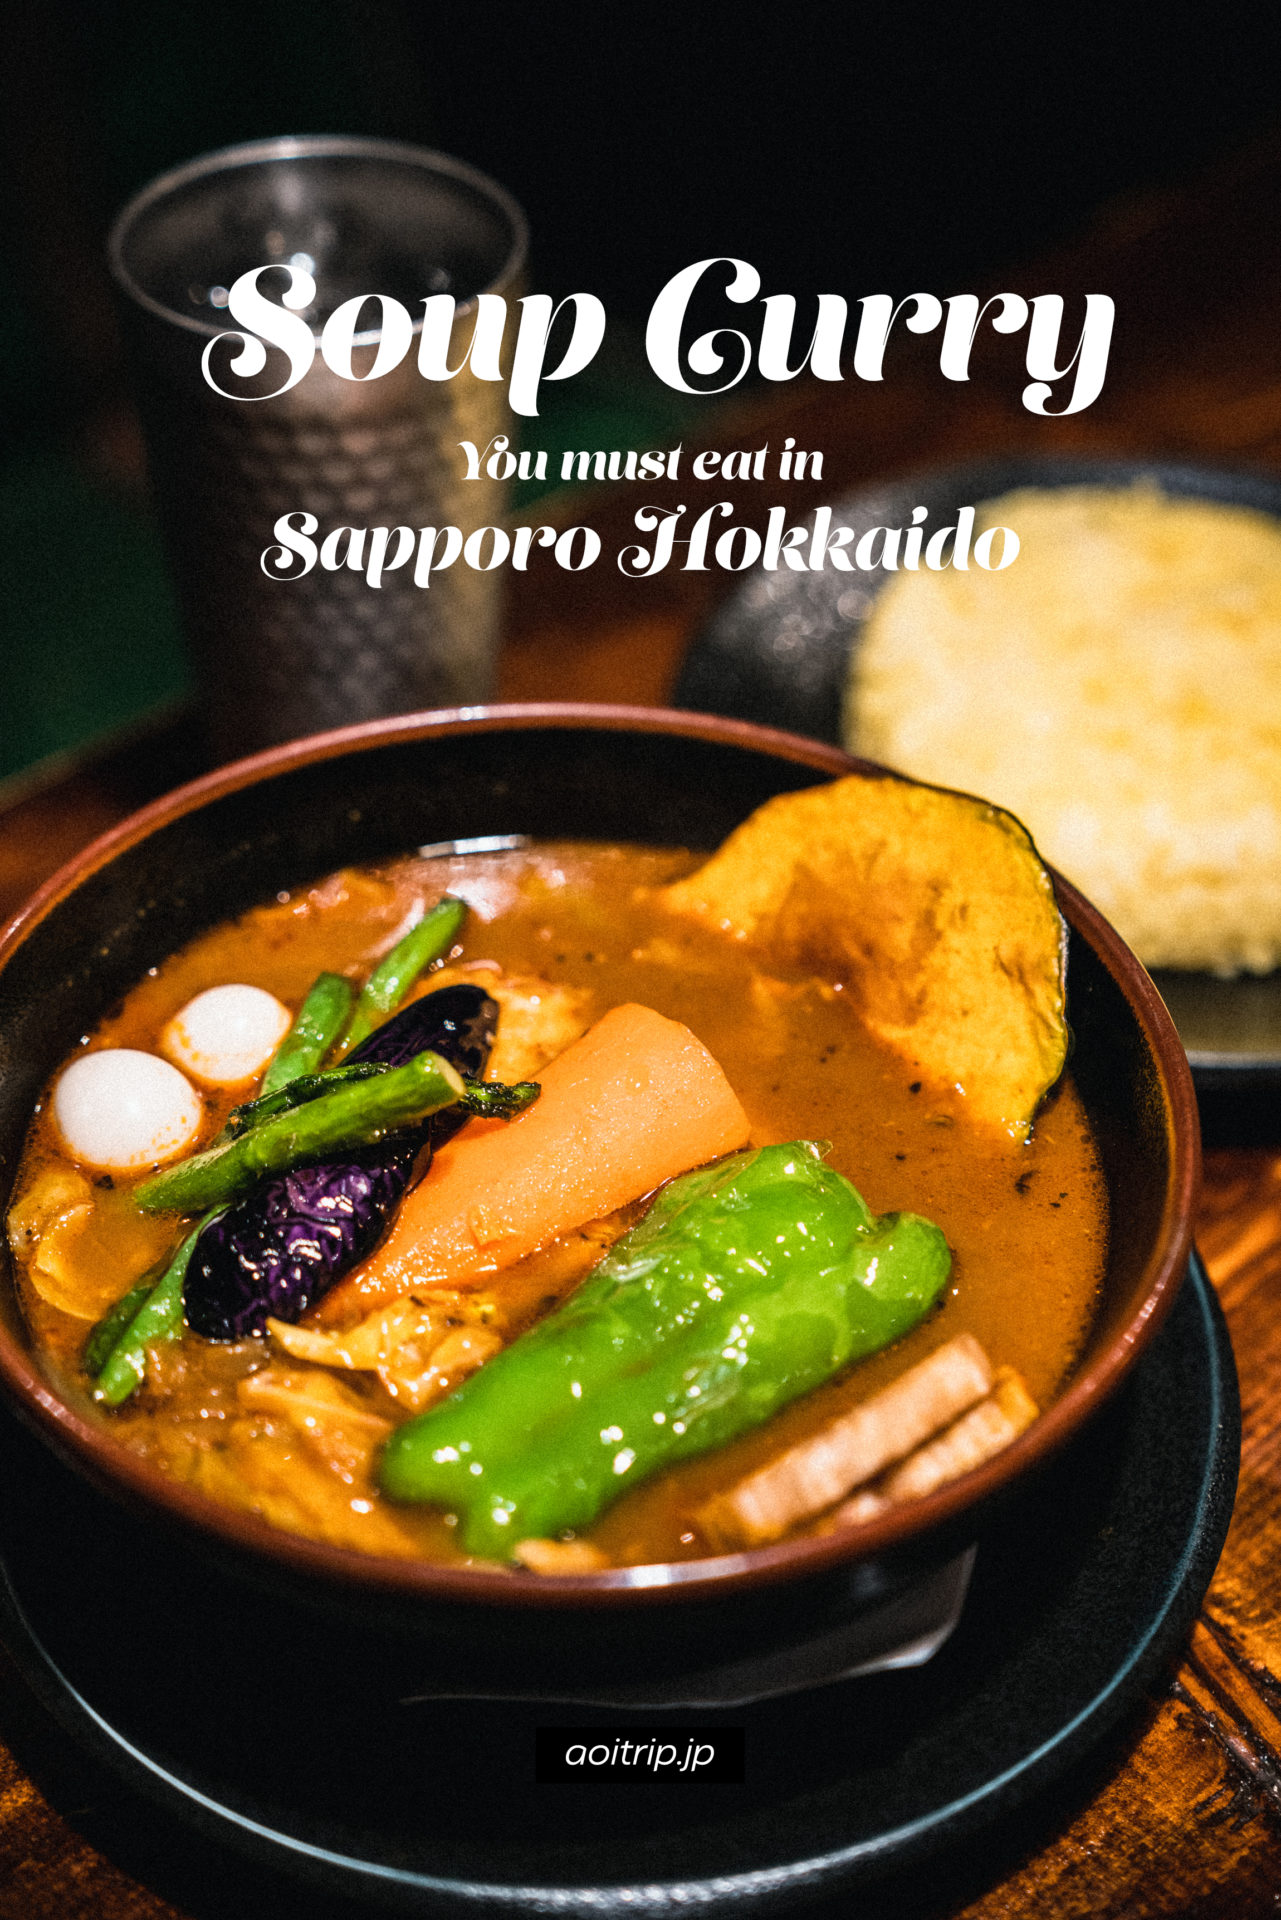 北海道 札幌旅行で食べた美味しいスープカレー店 Where to eat Soup Curry in Sapporo, Hokkaido